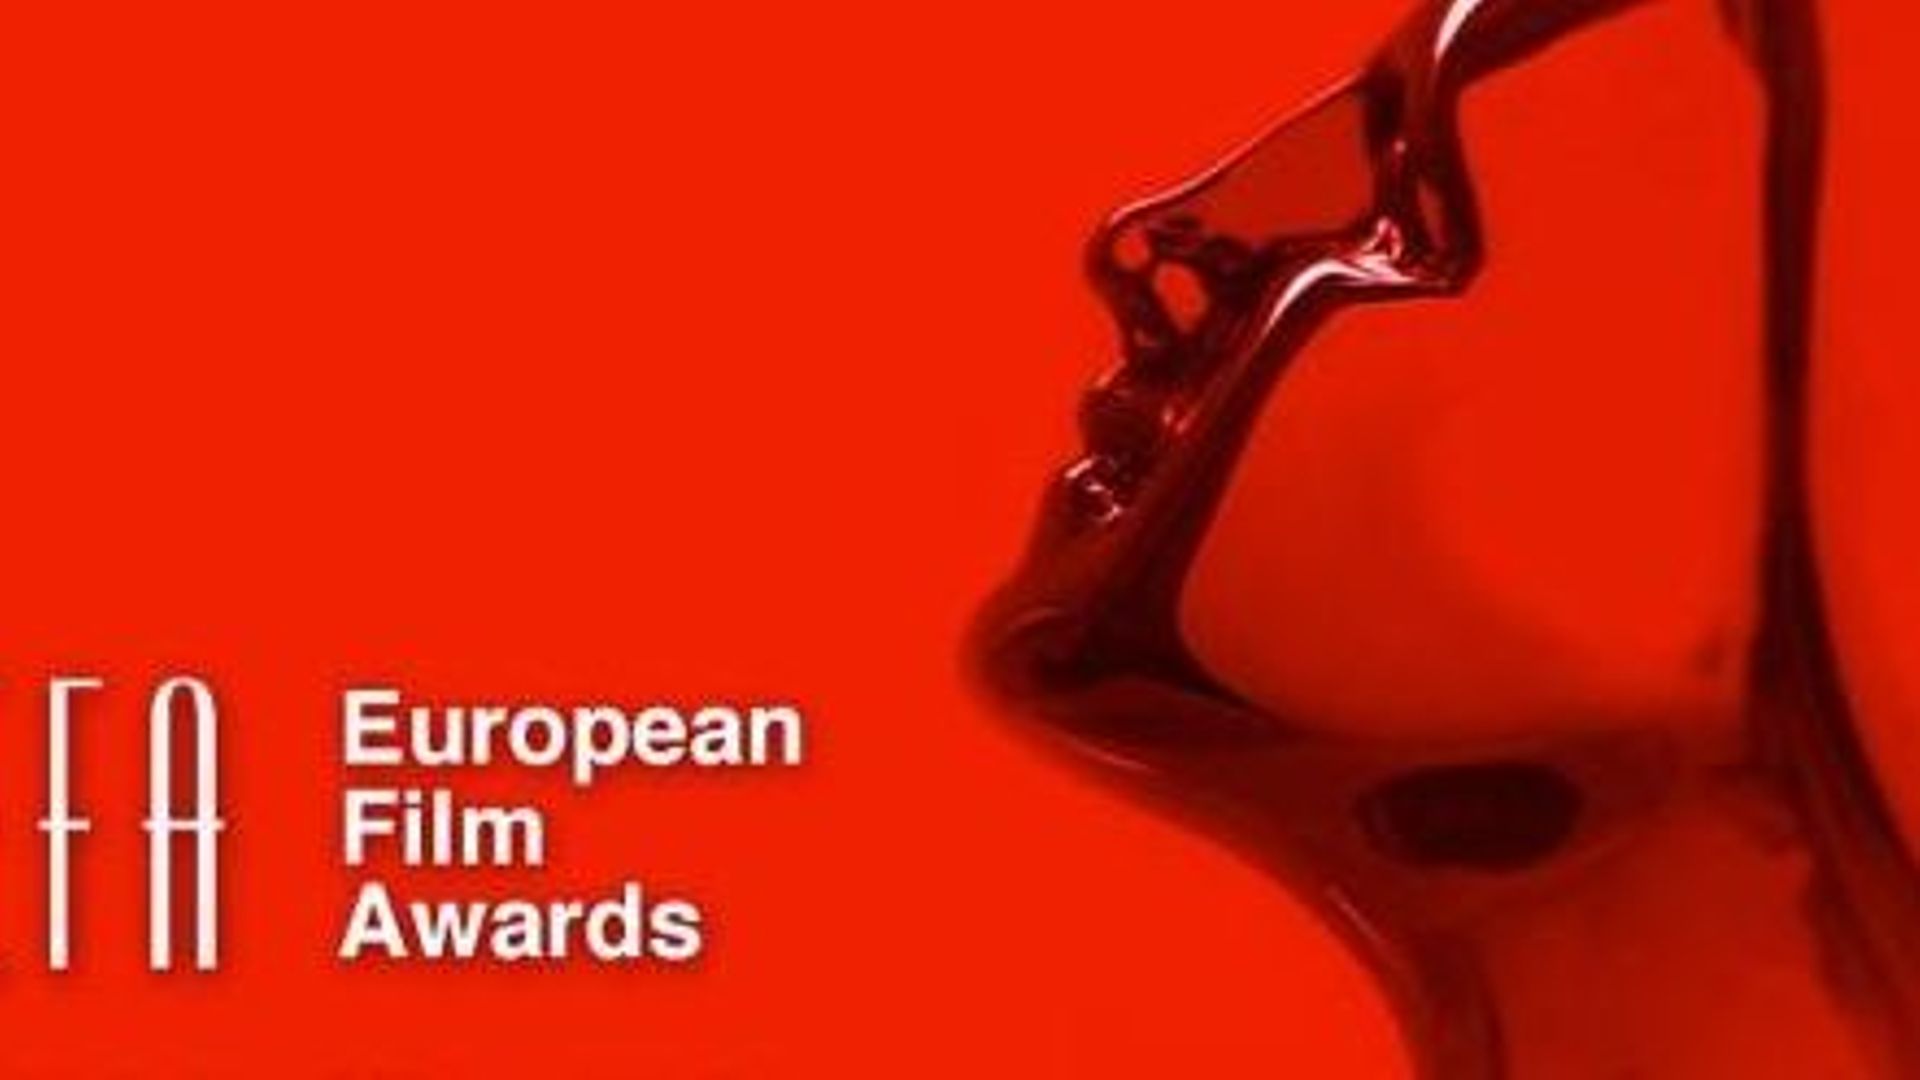 European Film Awards - La Belgique à nouveau bien représentée dans la catégorie des films d'animation